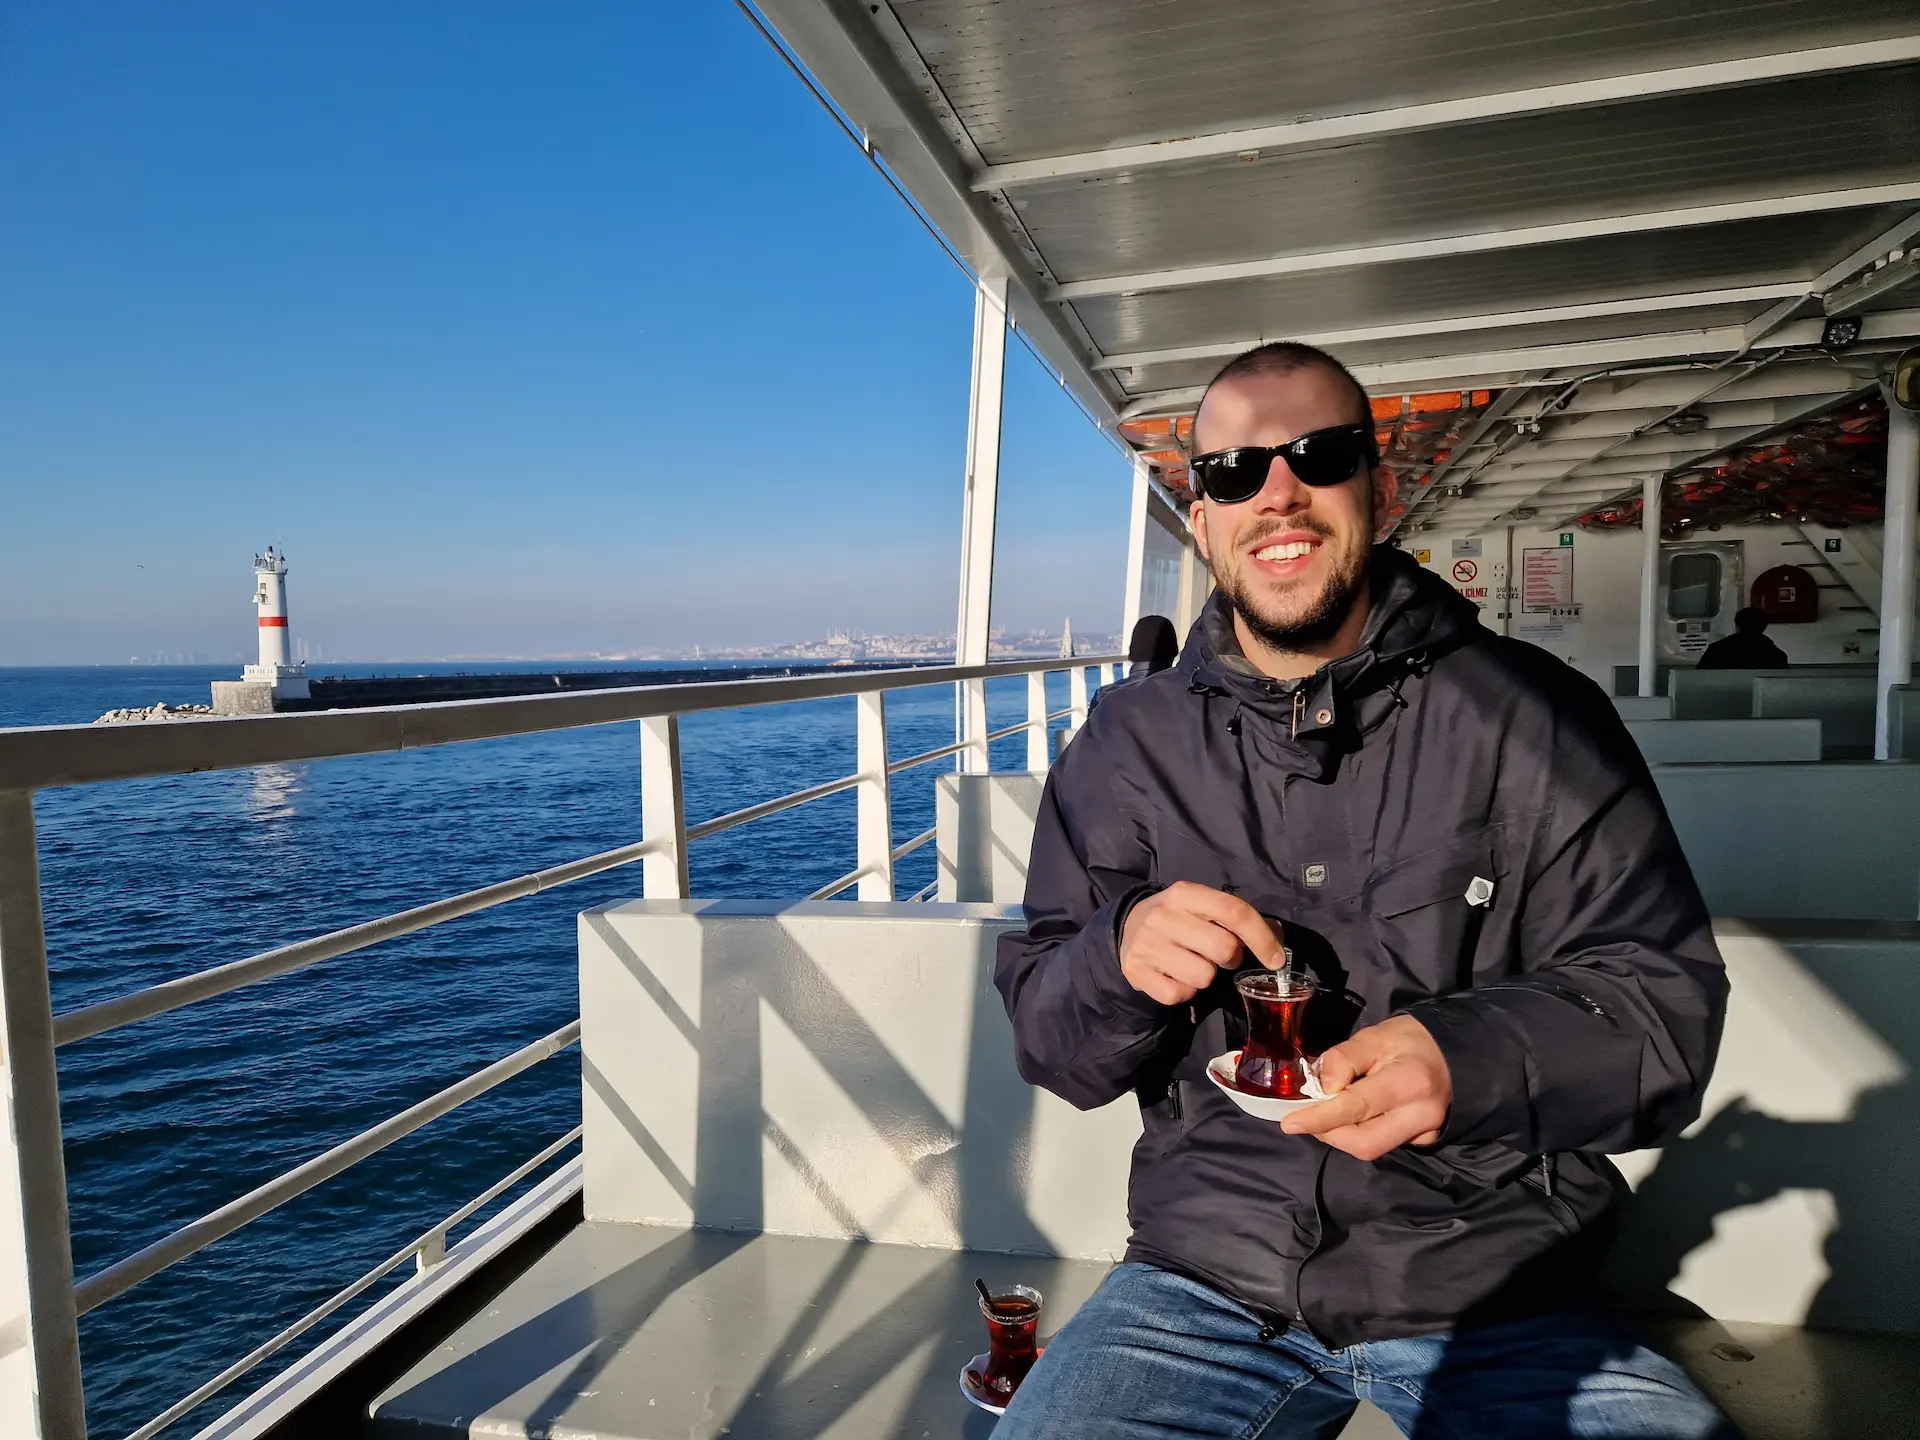 Robin boit un thé sur le pont d'un ferry, il fait grand beau et il porte des lunettes de soleil.